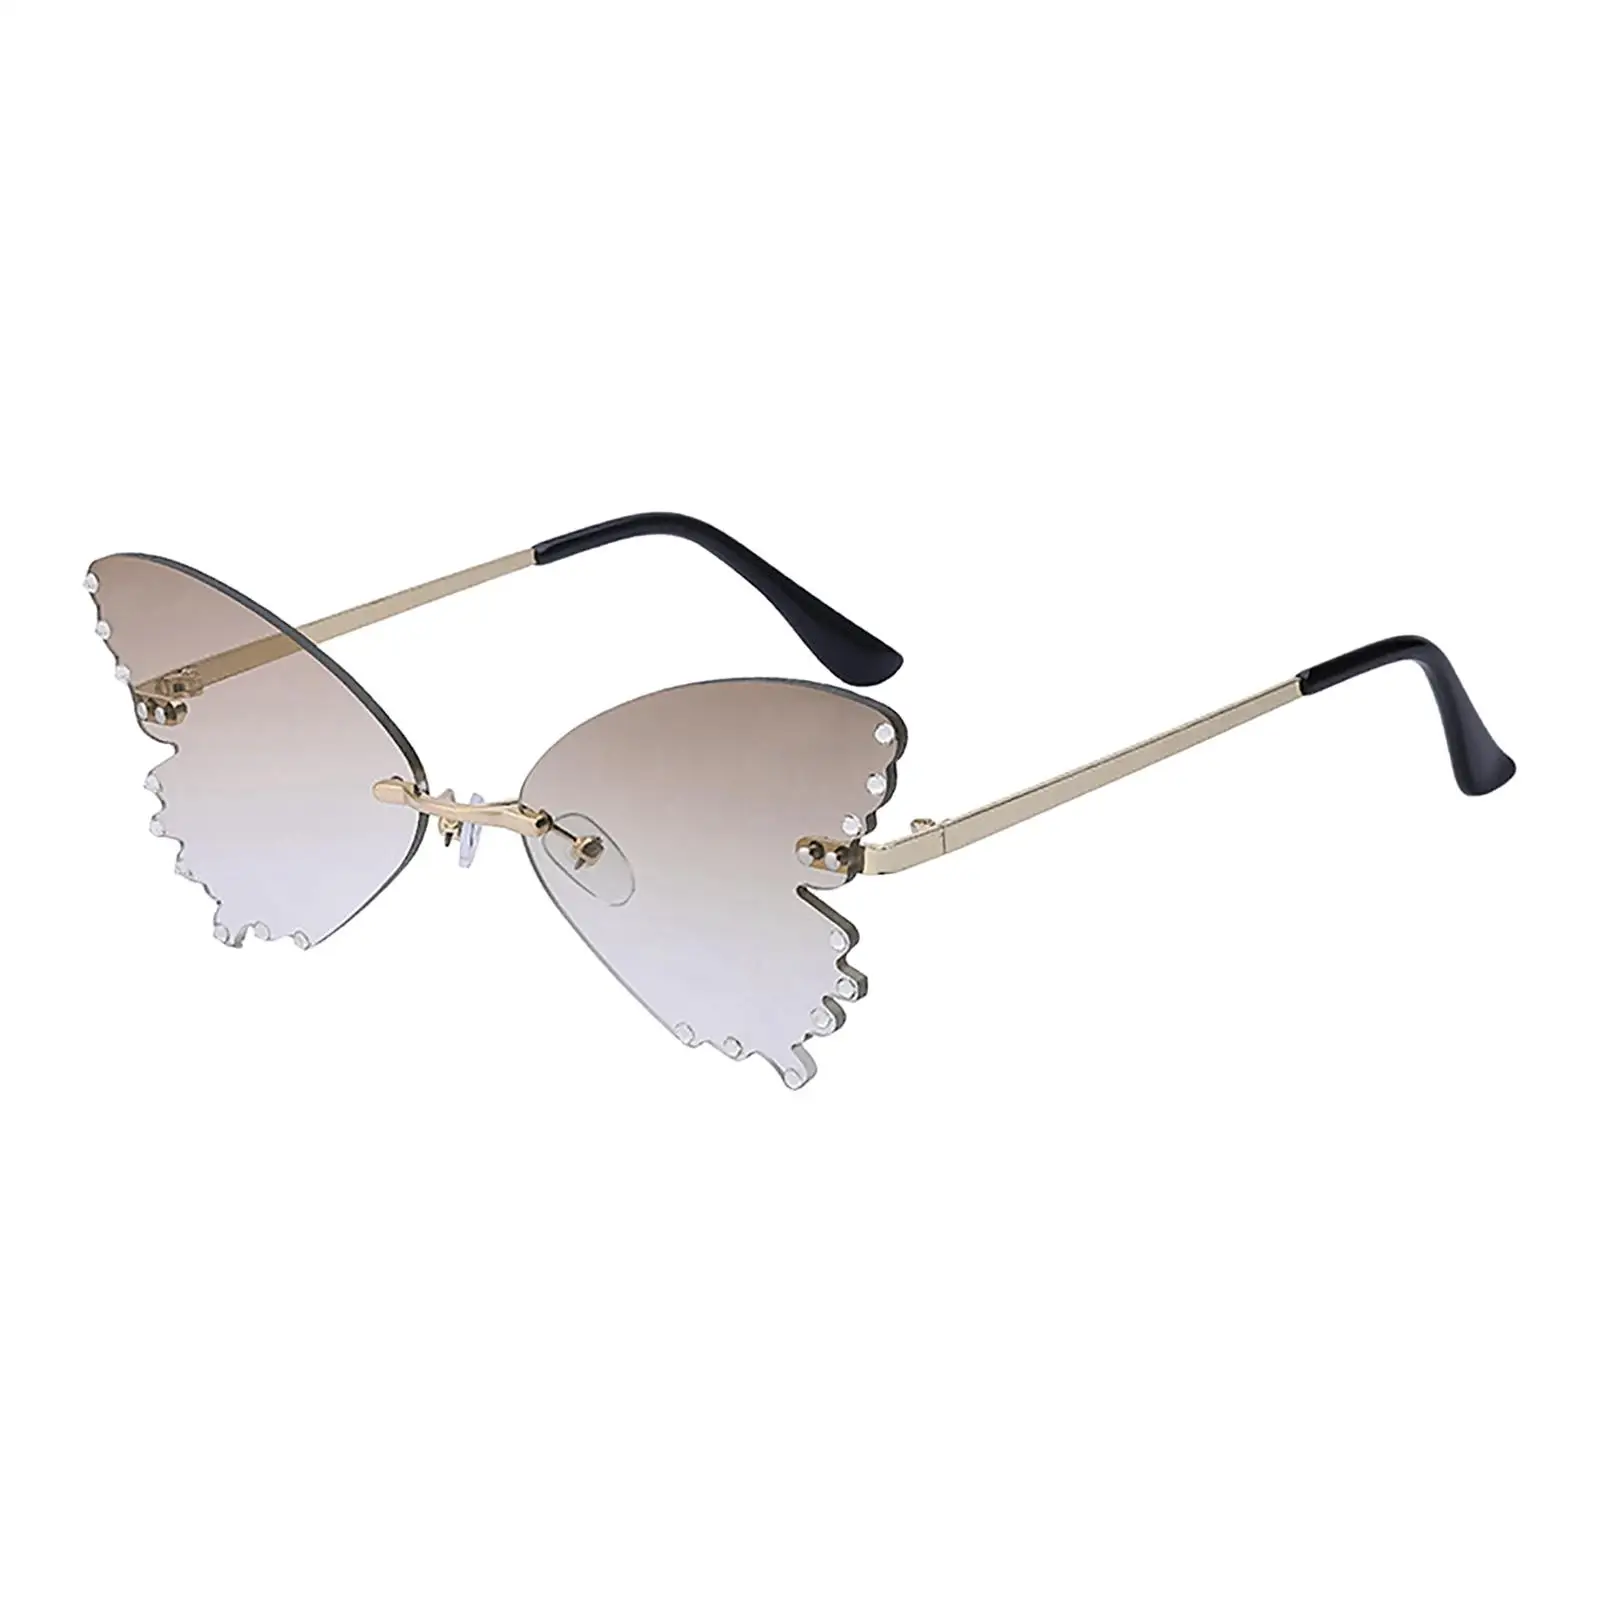 Trendy Butterfly Shape Sunglasses Women Eyewear Lightweight for